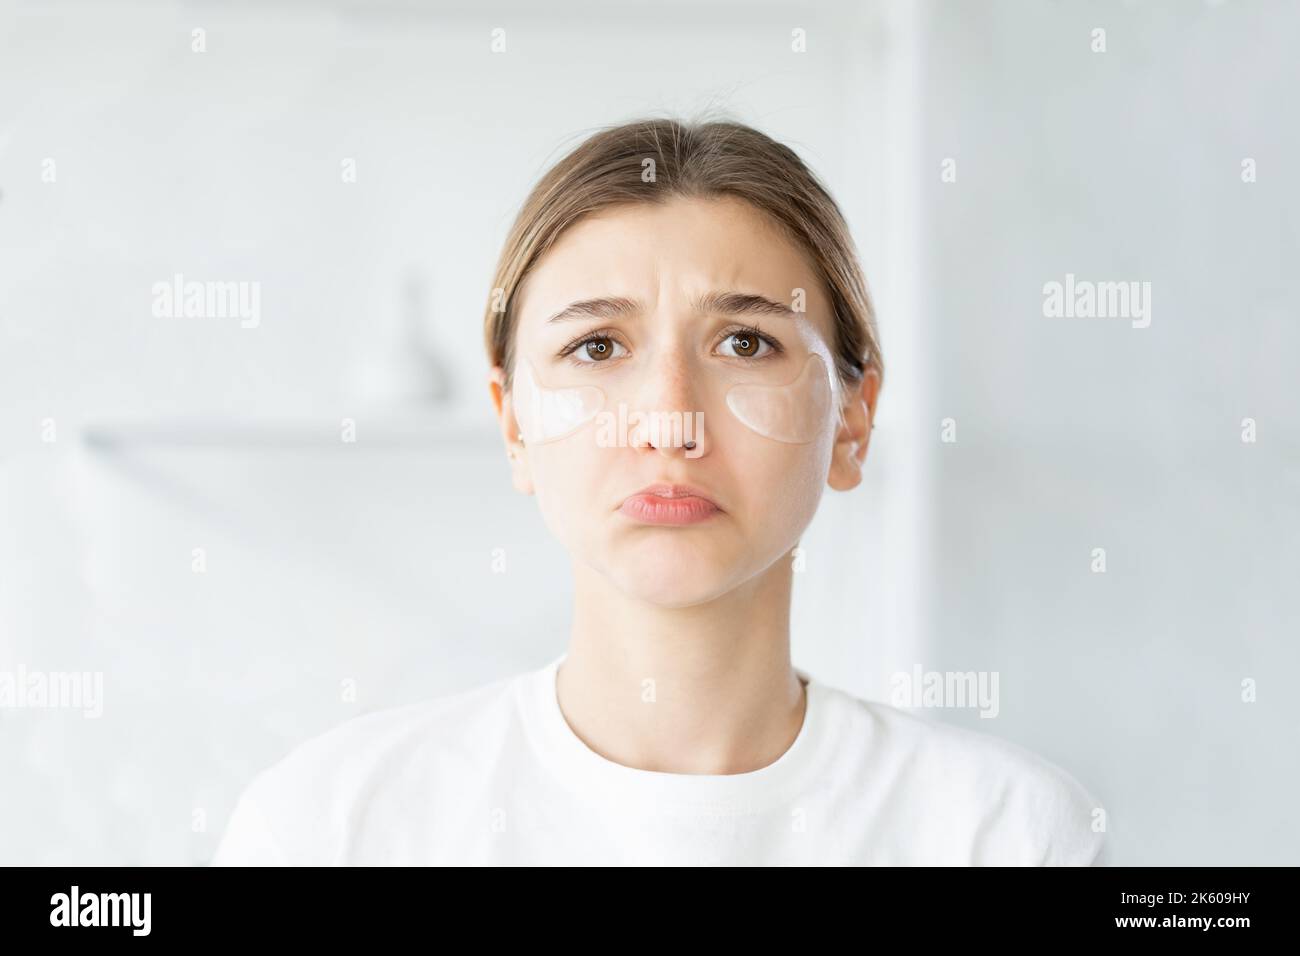 Kosmetik allergieempfindliche Haut traurige Frau Gesicht Stockfoto